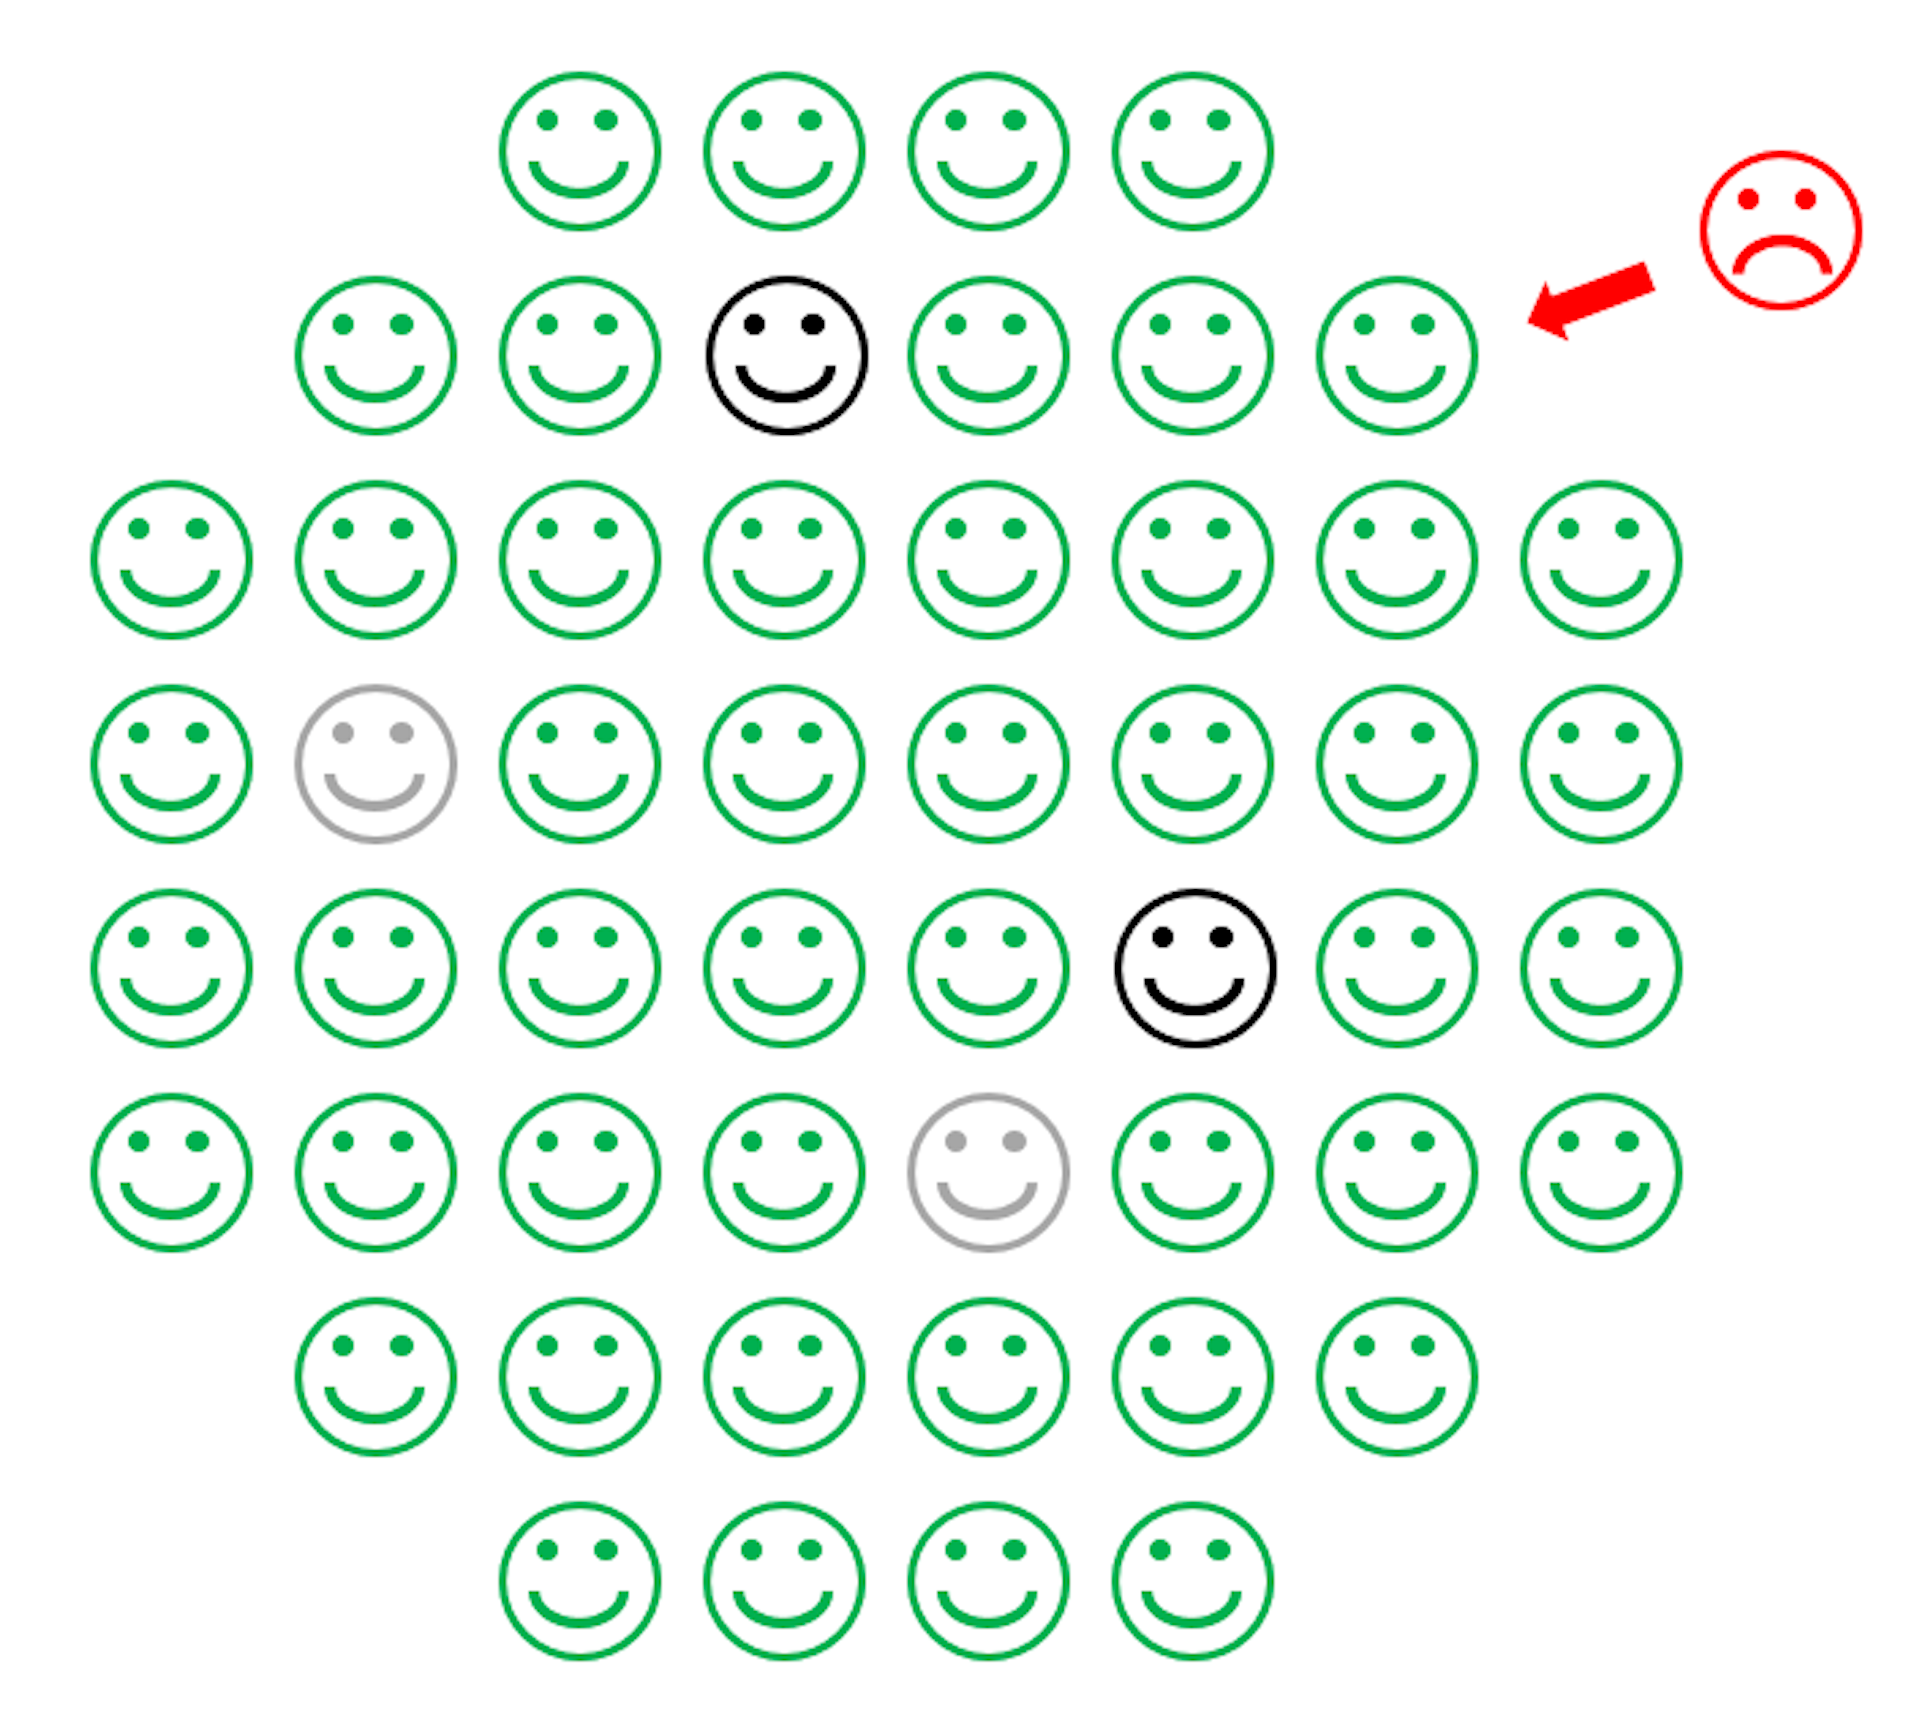 Un dessin montrant un cercle de visages heureux verts avec quelques visages heureux bleus au milieu et un visage rouge renfrogné incapable d'atteindre les visages bleus.